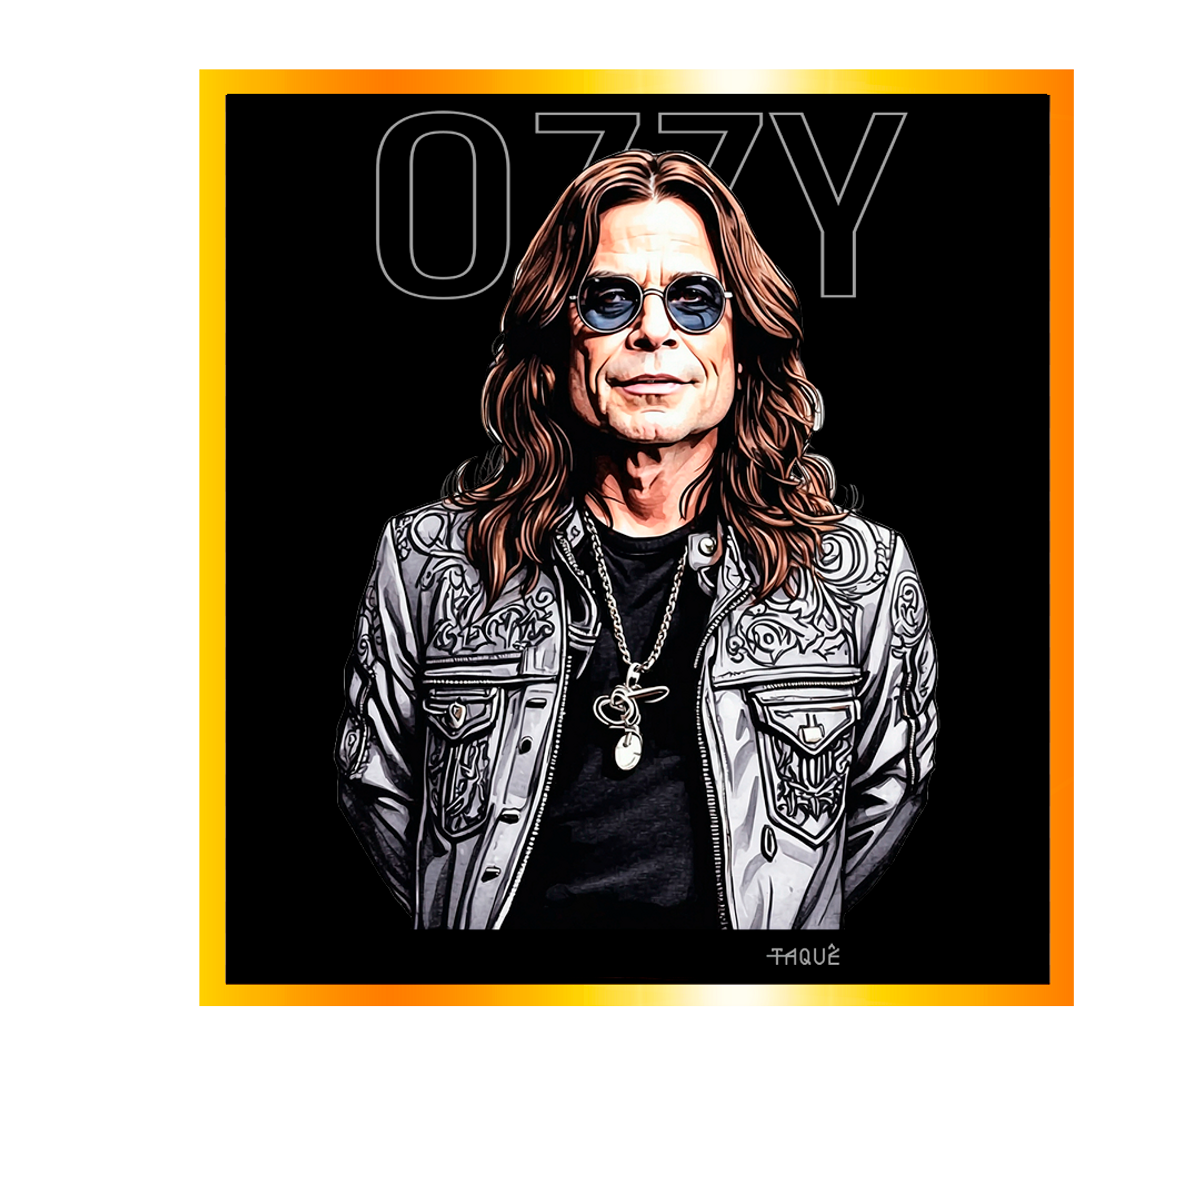 Nome do produto: Camiseta Taquê Lendas - Ozzy Osbourne